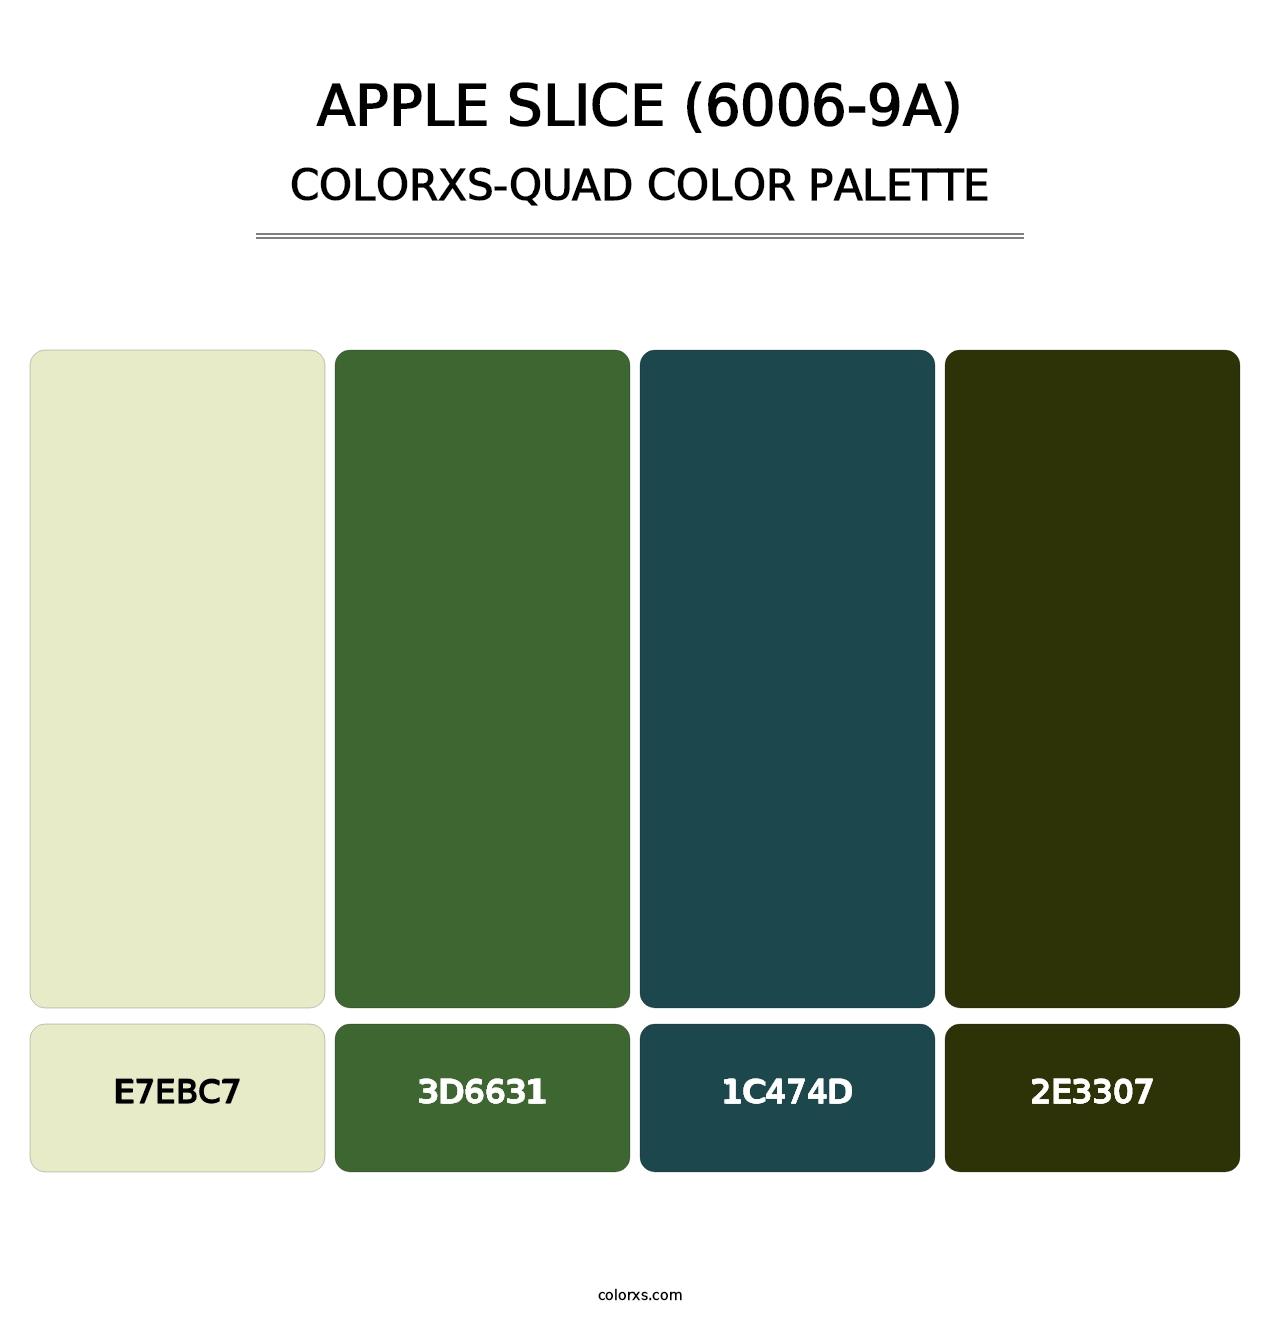 Apple Slice (6006-9A) - Colorxs Quad Palette